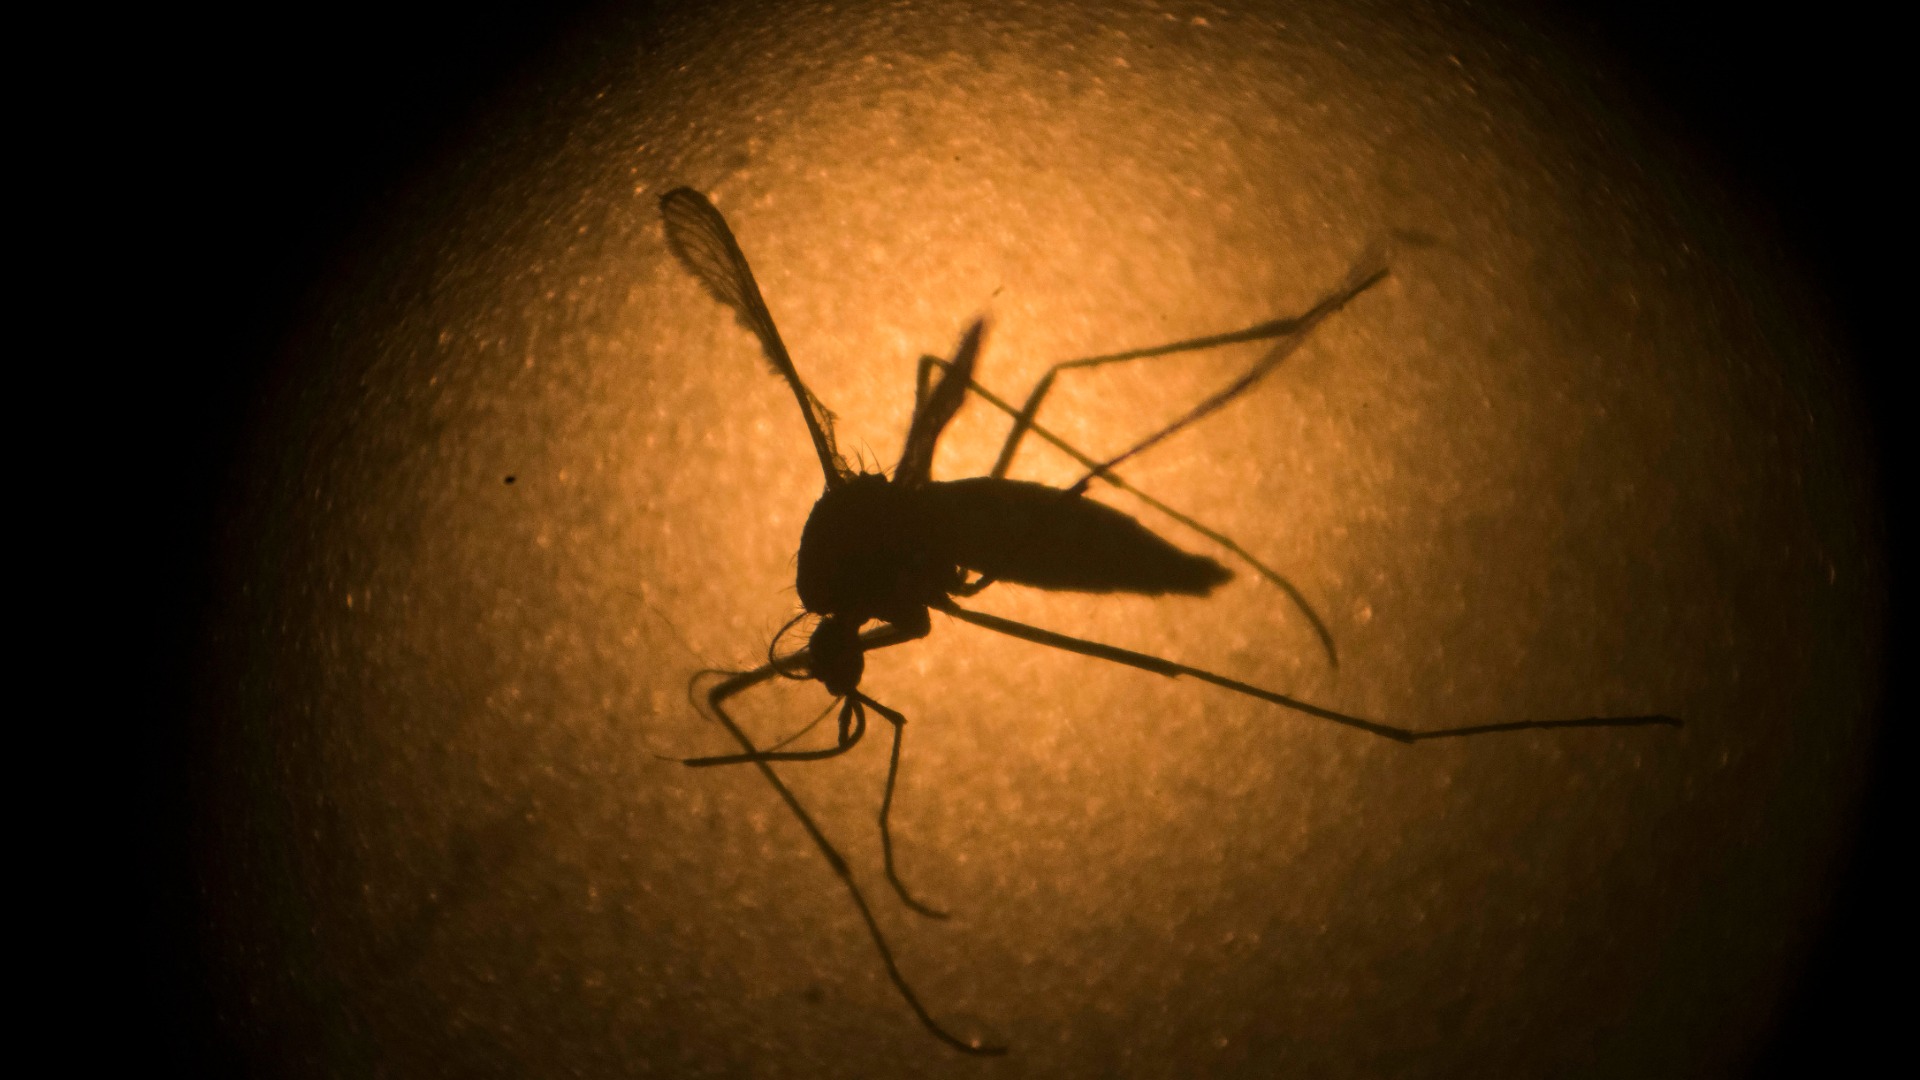 Científicos chinos desarrollan un posible inhibidor del virus del zika